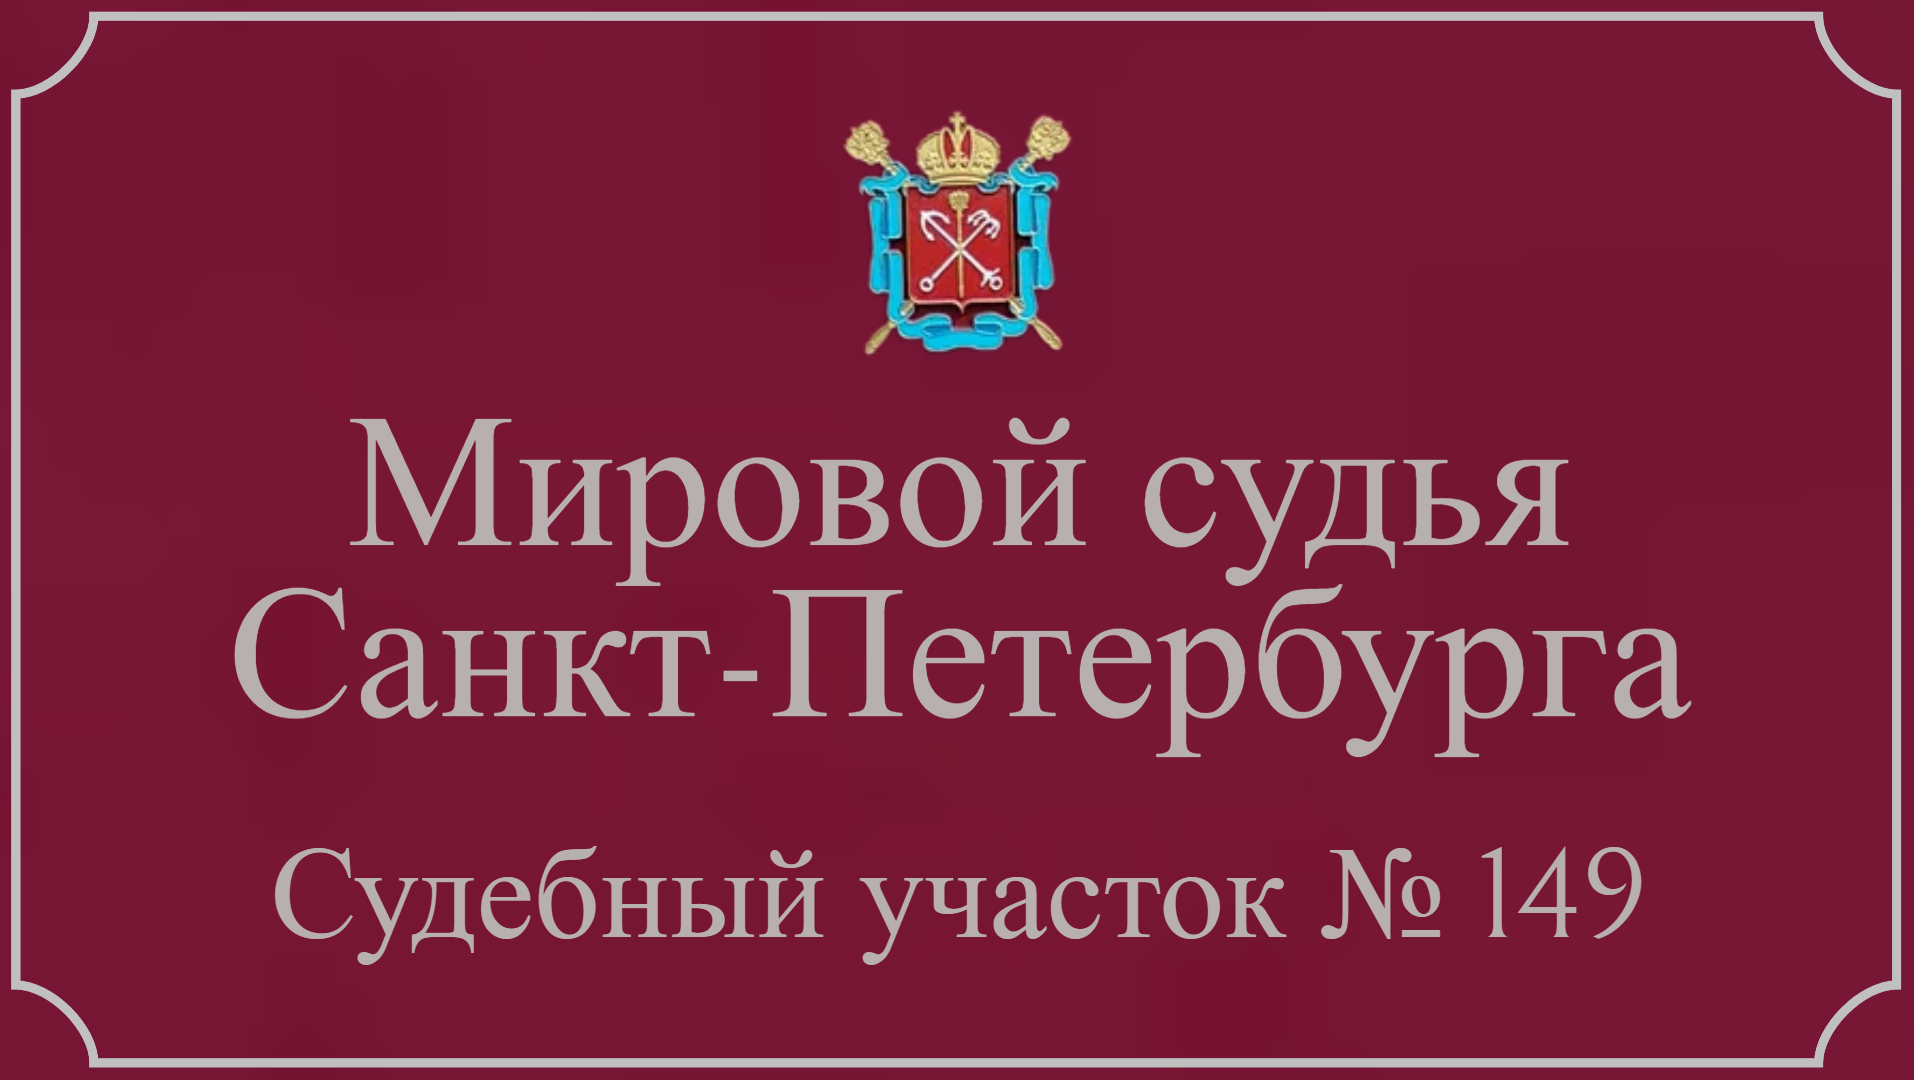 Информация по 149 судебному участку в Санкт-Петербурге.